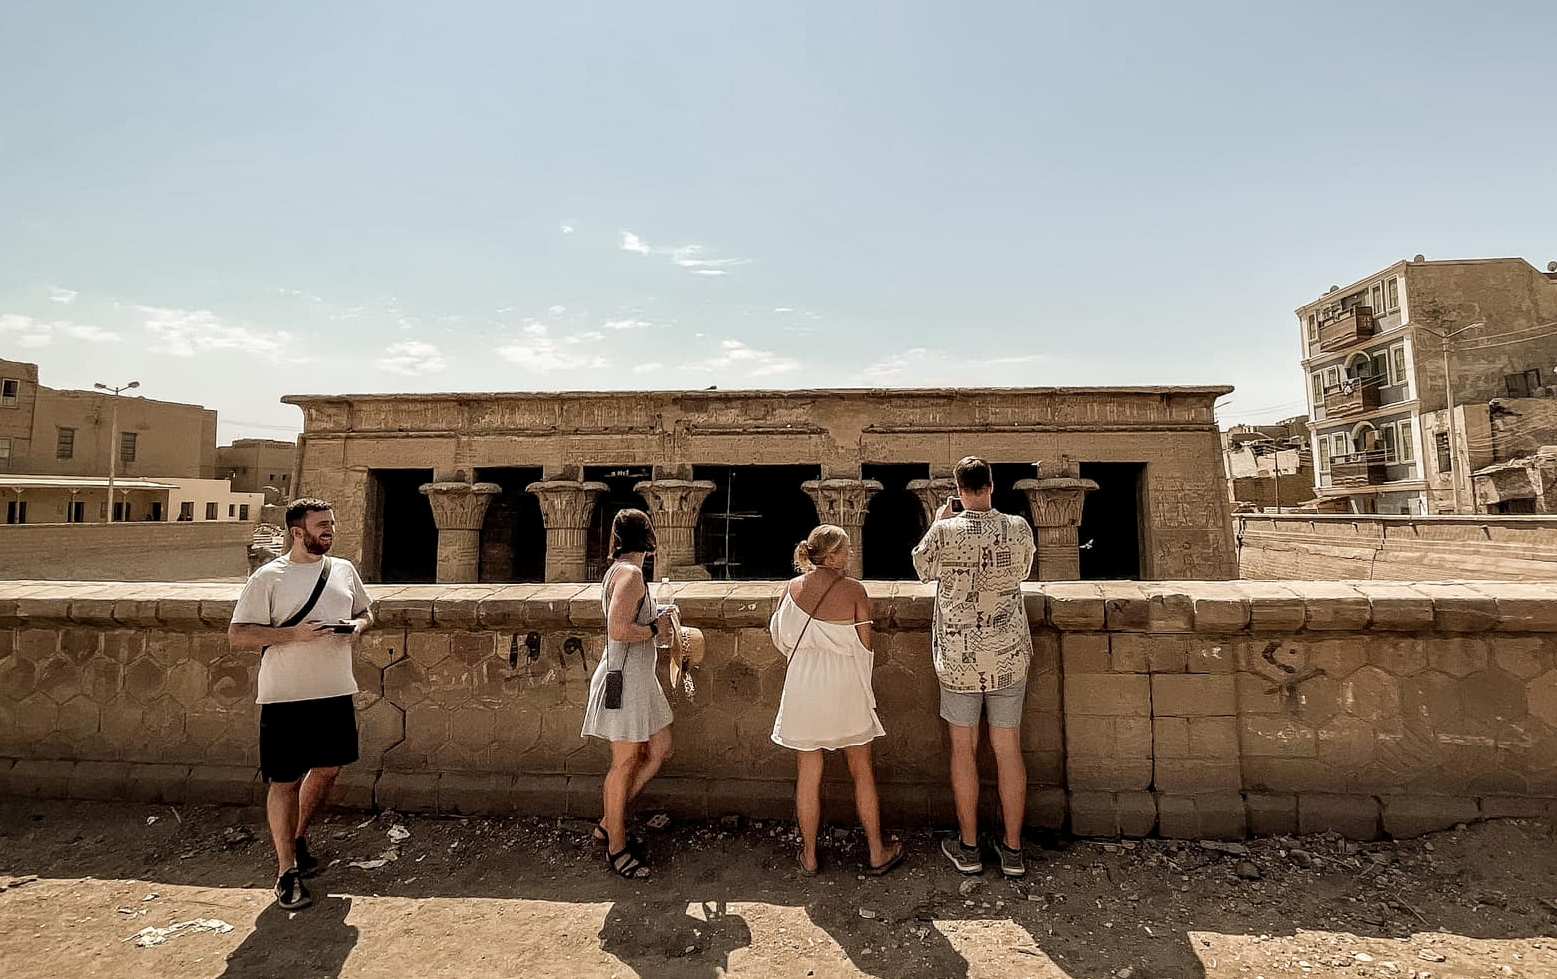 السياح خلال زيارتهم لمعبد إسنا جنوب الأقصر